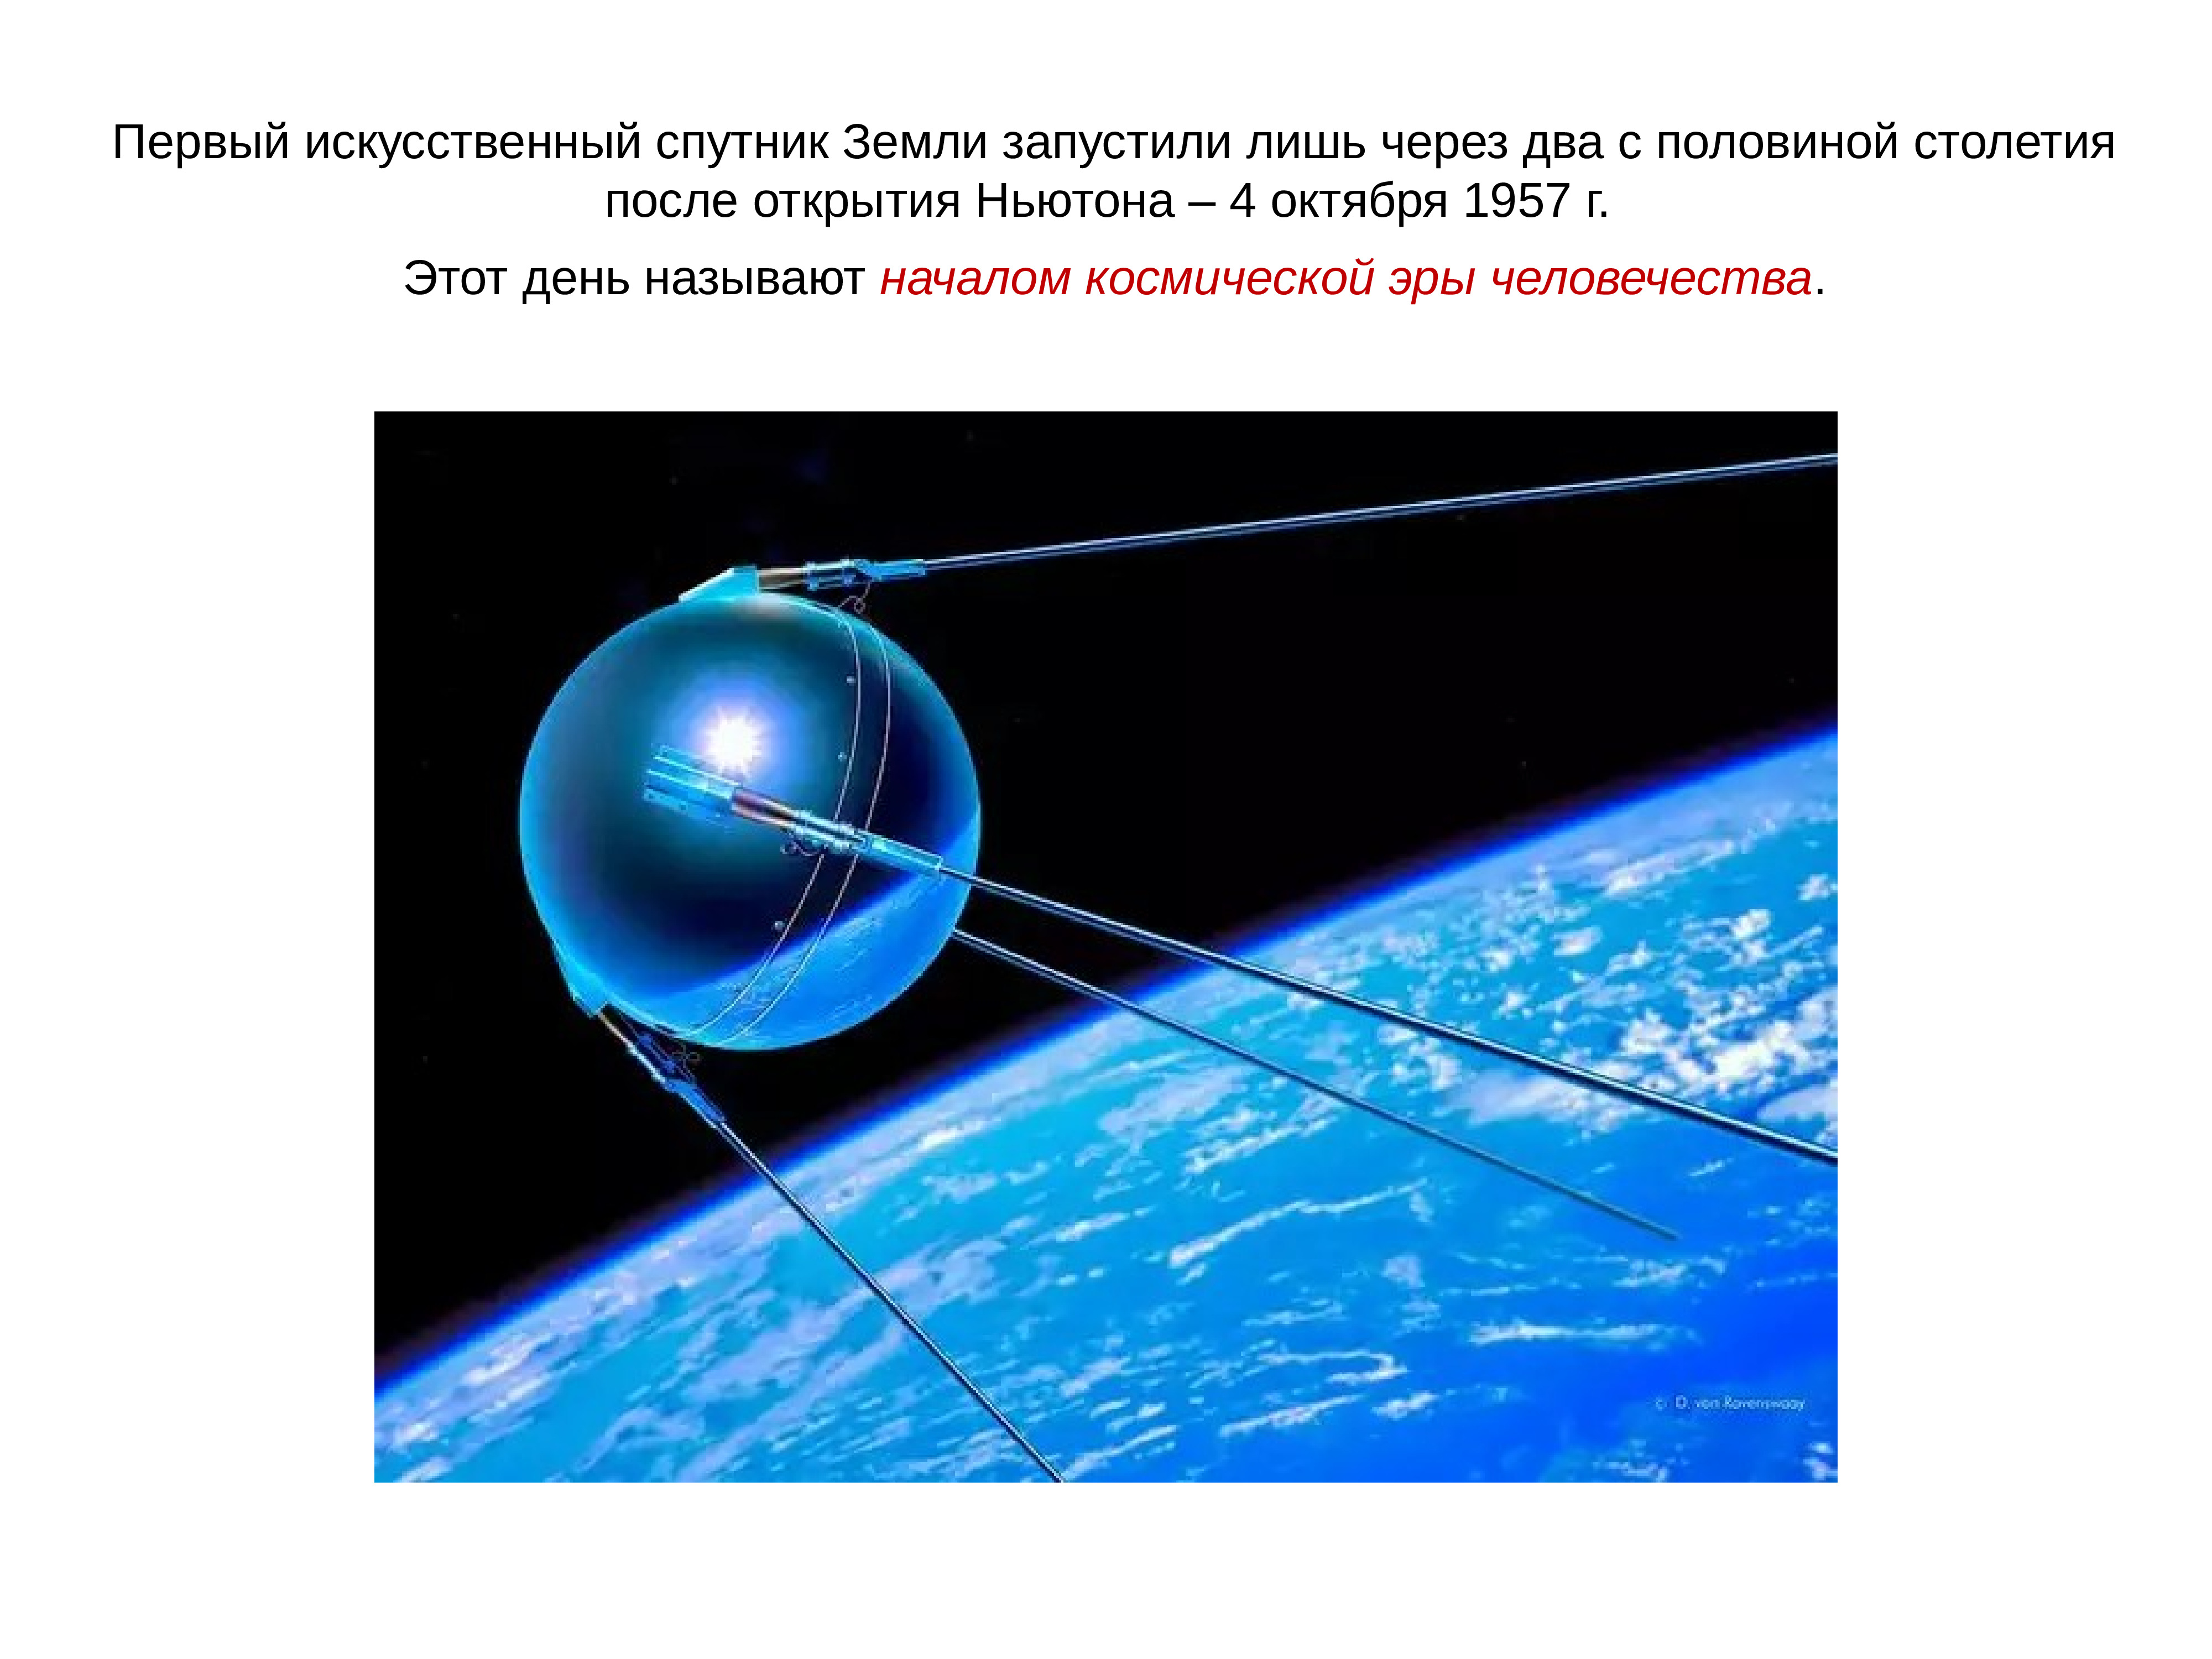 Какая страна первая запустила спутник в космос. 4 Октября 1957 года запущен первый искусственный Спутник земли. 4 Октября 1957-первый ИСЗ "Спутник" (СССР).. Искусственный Спутник 1957. Первый Спутник 1957.